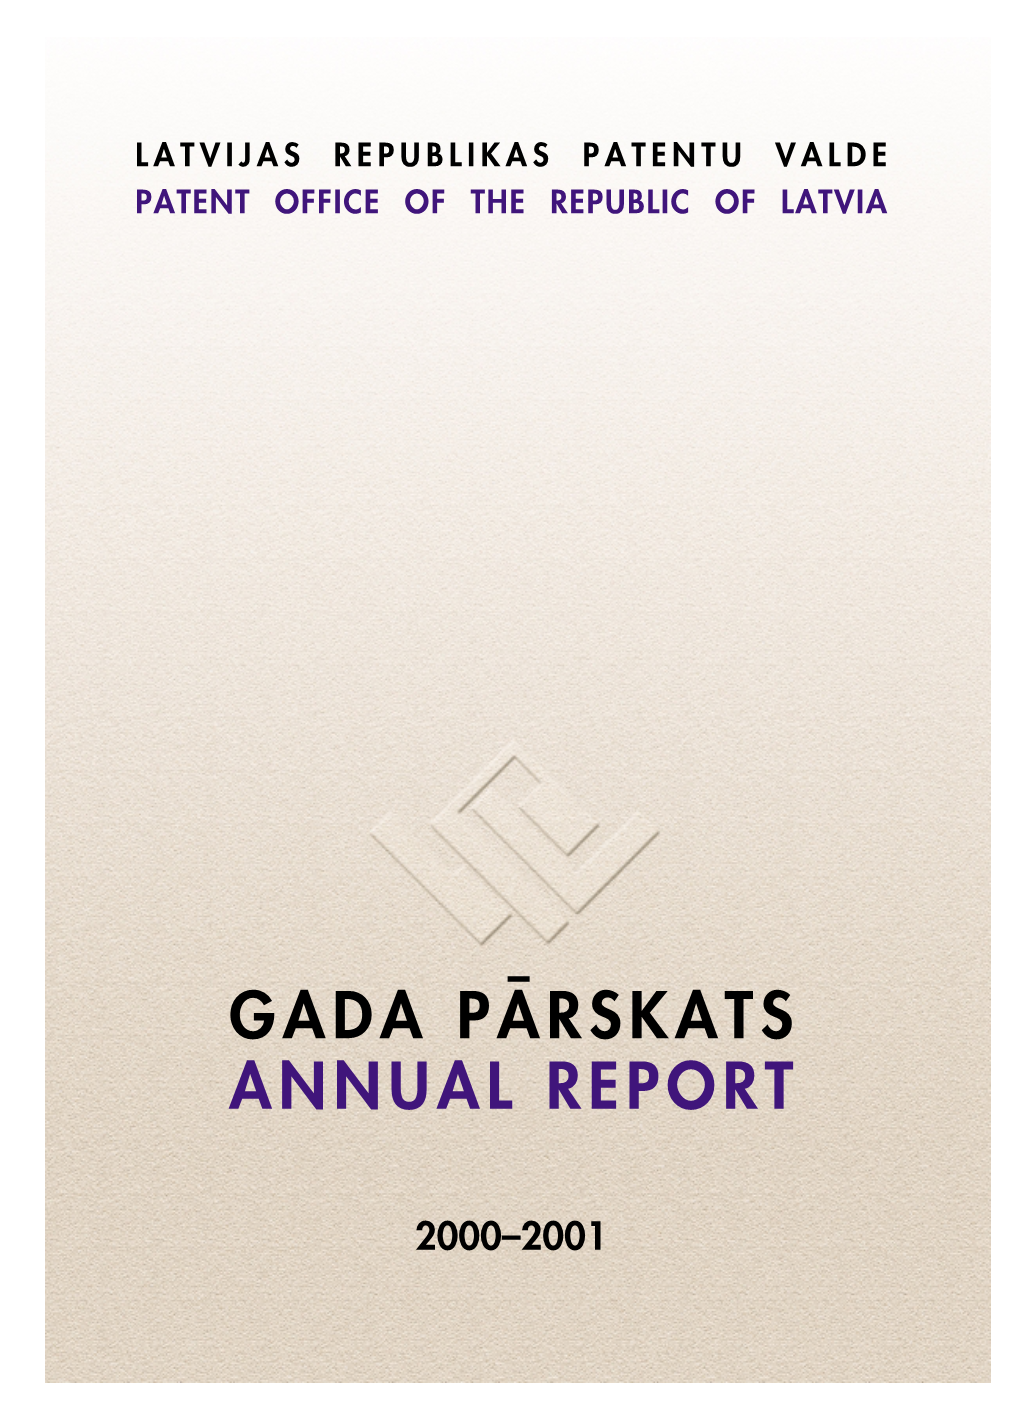 Gada Pårskats Annual Report